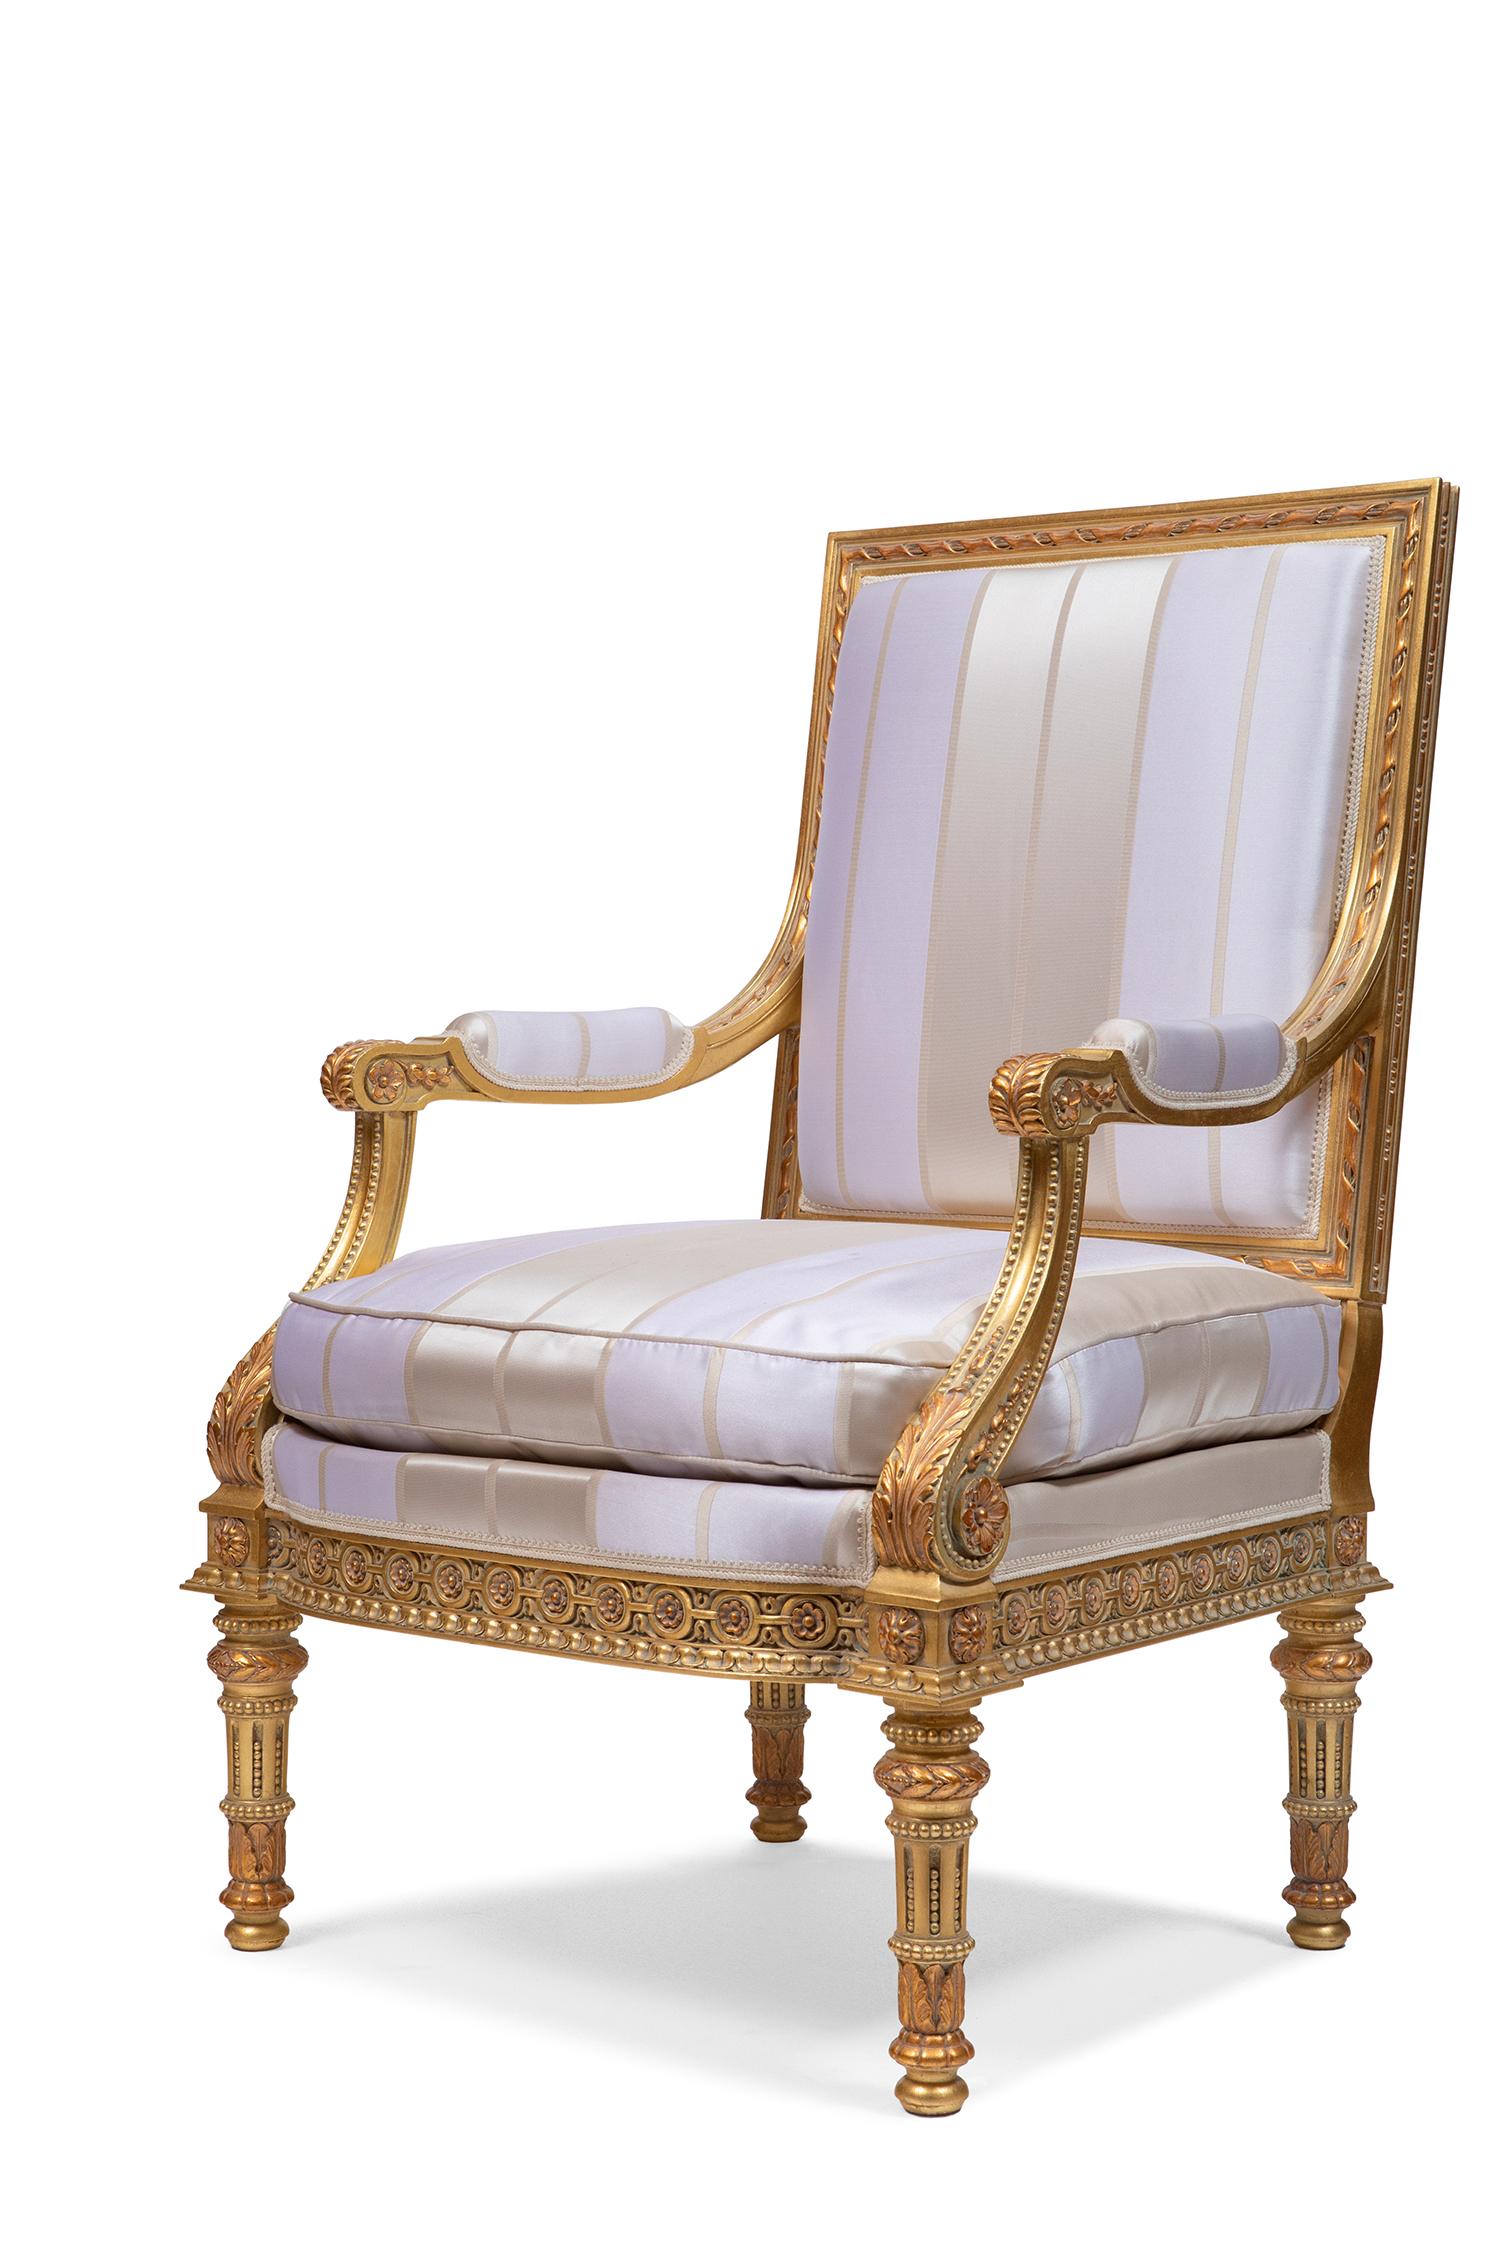 Vom LSXVI-Stil inspirierter Sessel. Das erste Exemplar wurde wahrscheinlich Ende 1800 entworfen und hergestellt, aber es wird immer noch in der klassischen Belloni-Produktion verwendet.
Der Holzrahmen ist in Italien fein von Hand geschnitzt.